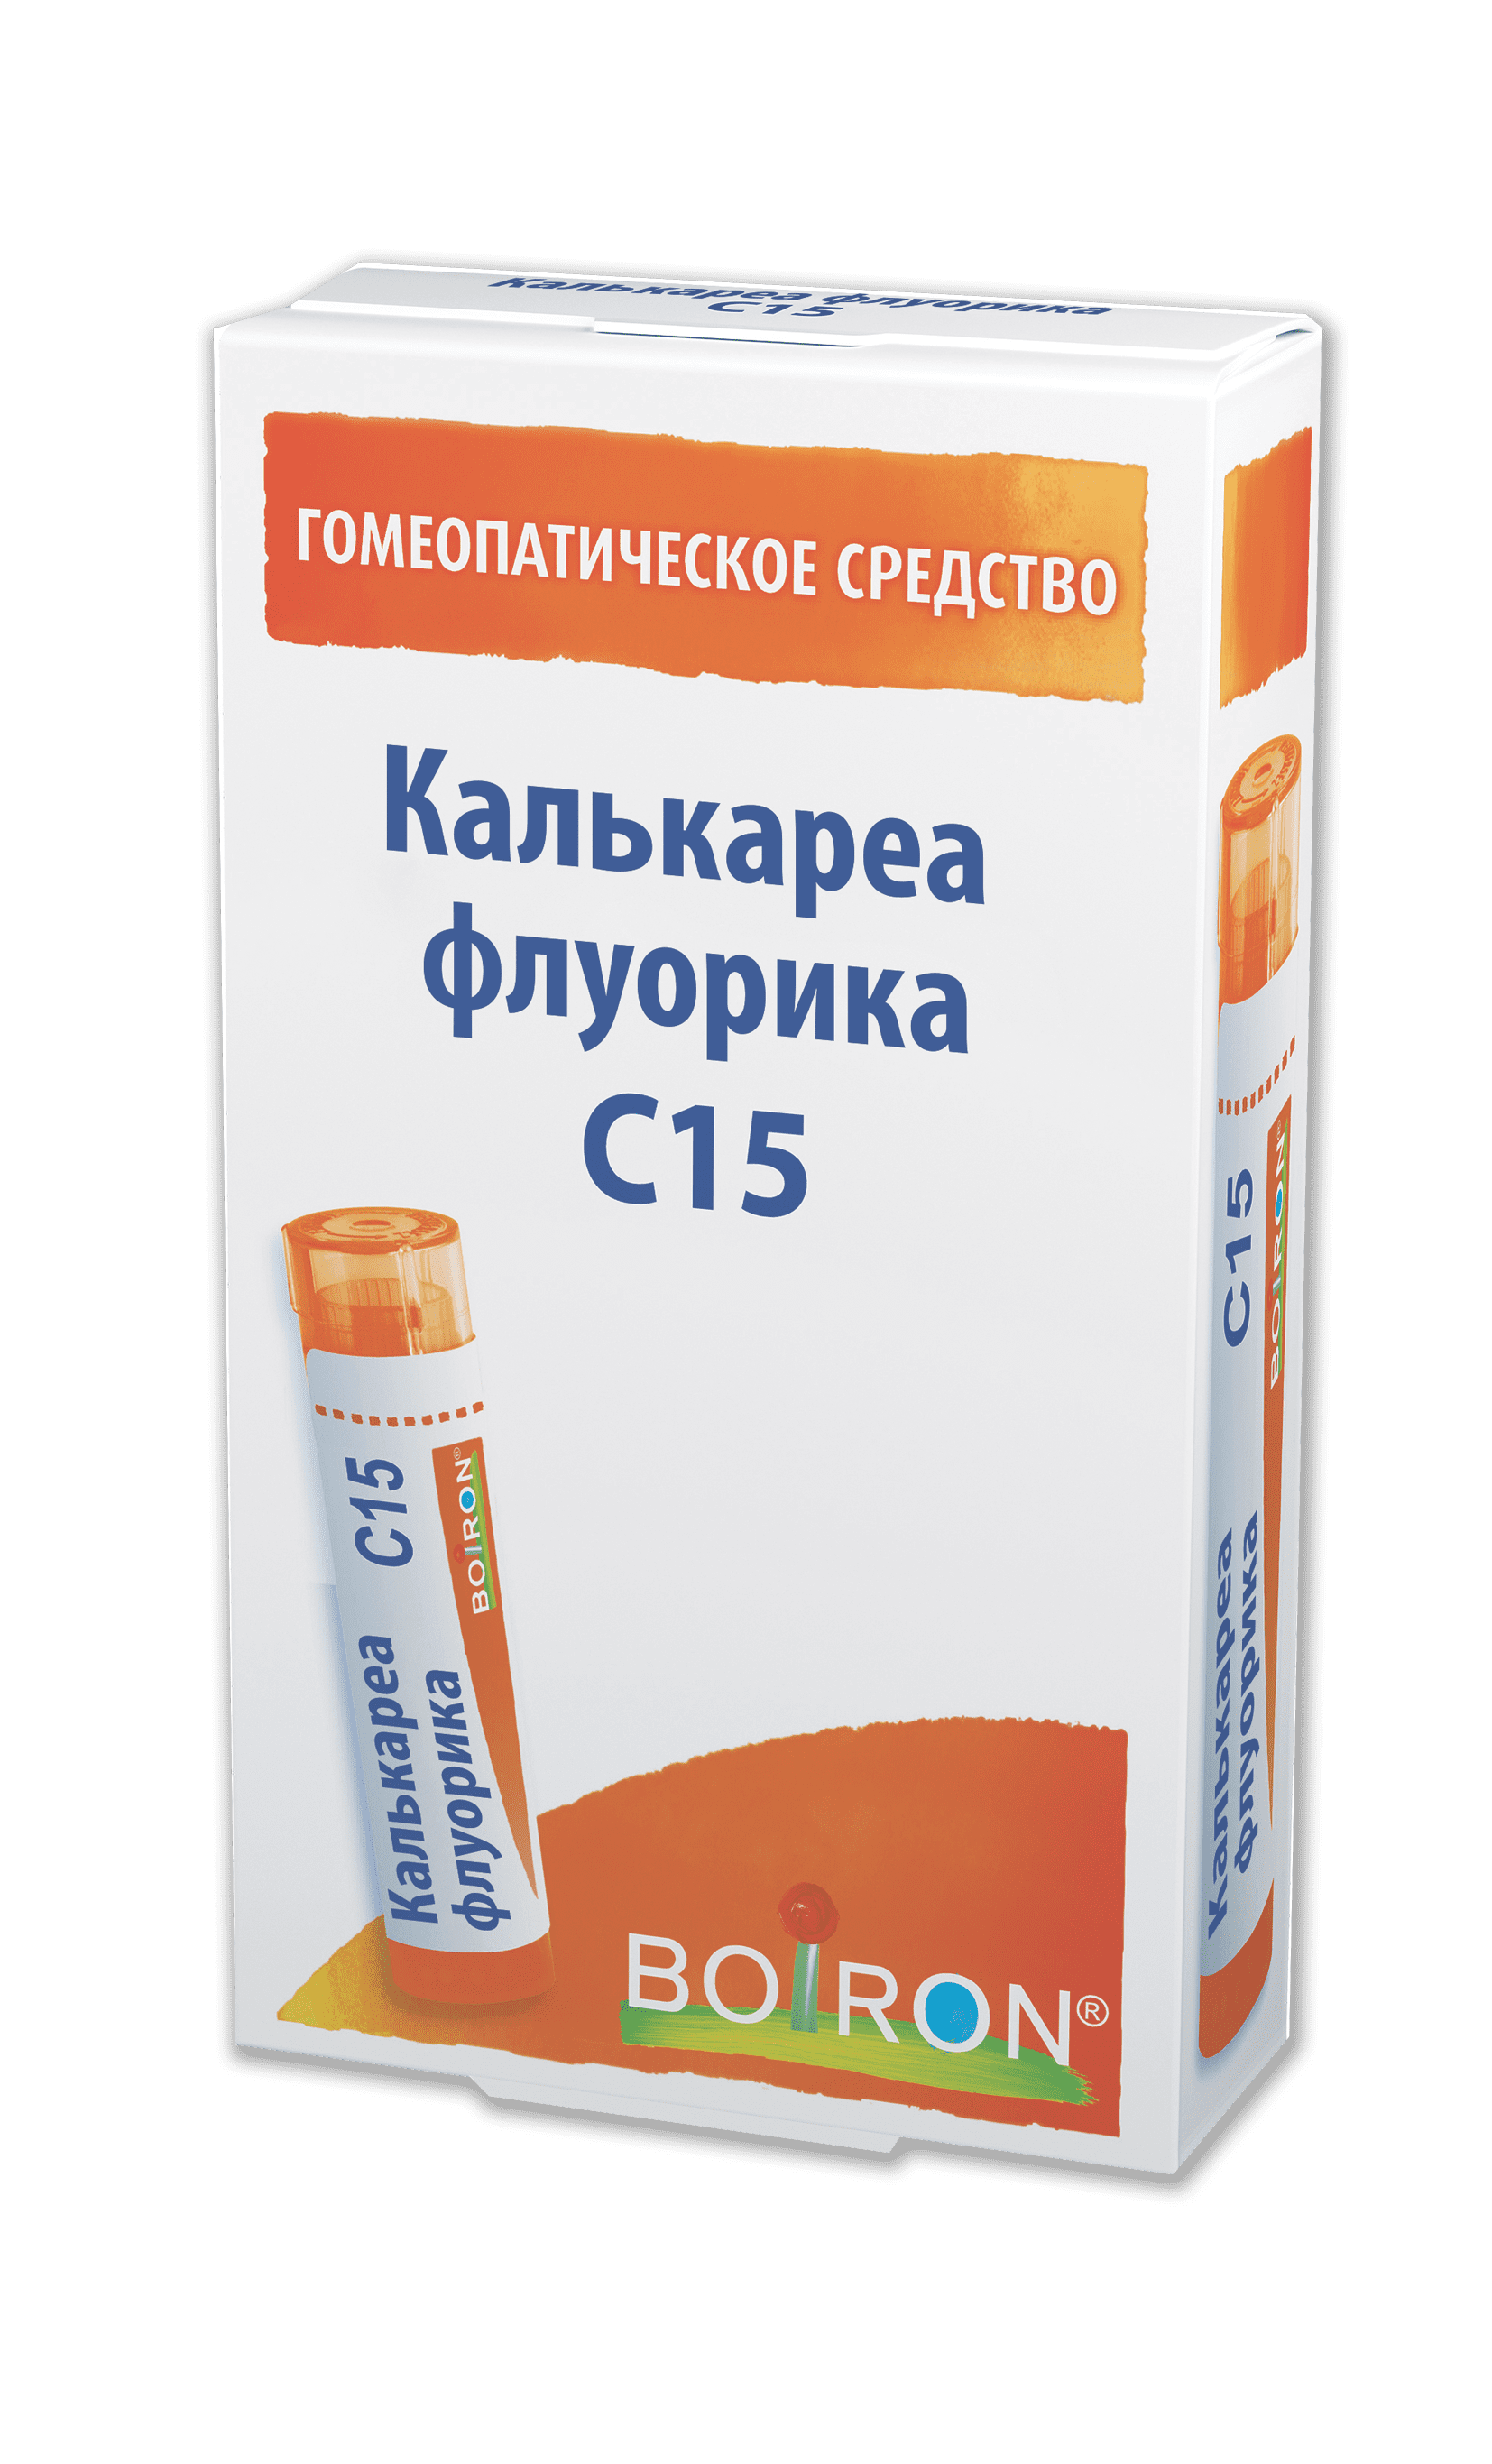 Калькареа флуорика C15, 4 г, гомеопатический монокомпонентный препарат .